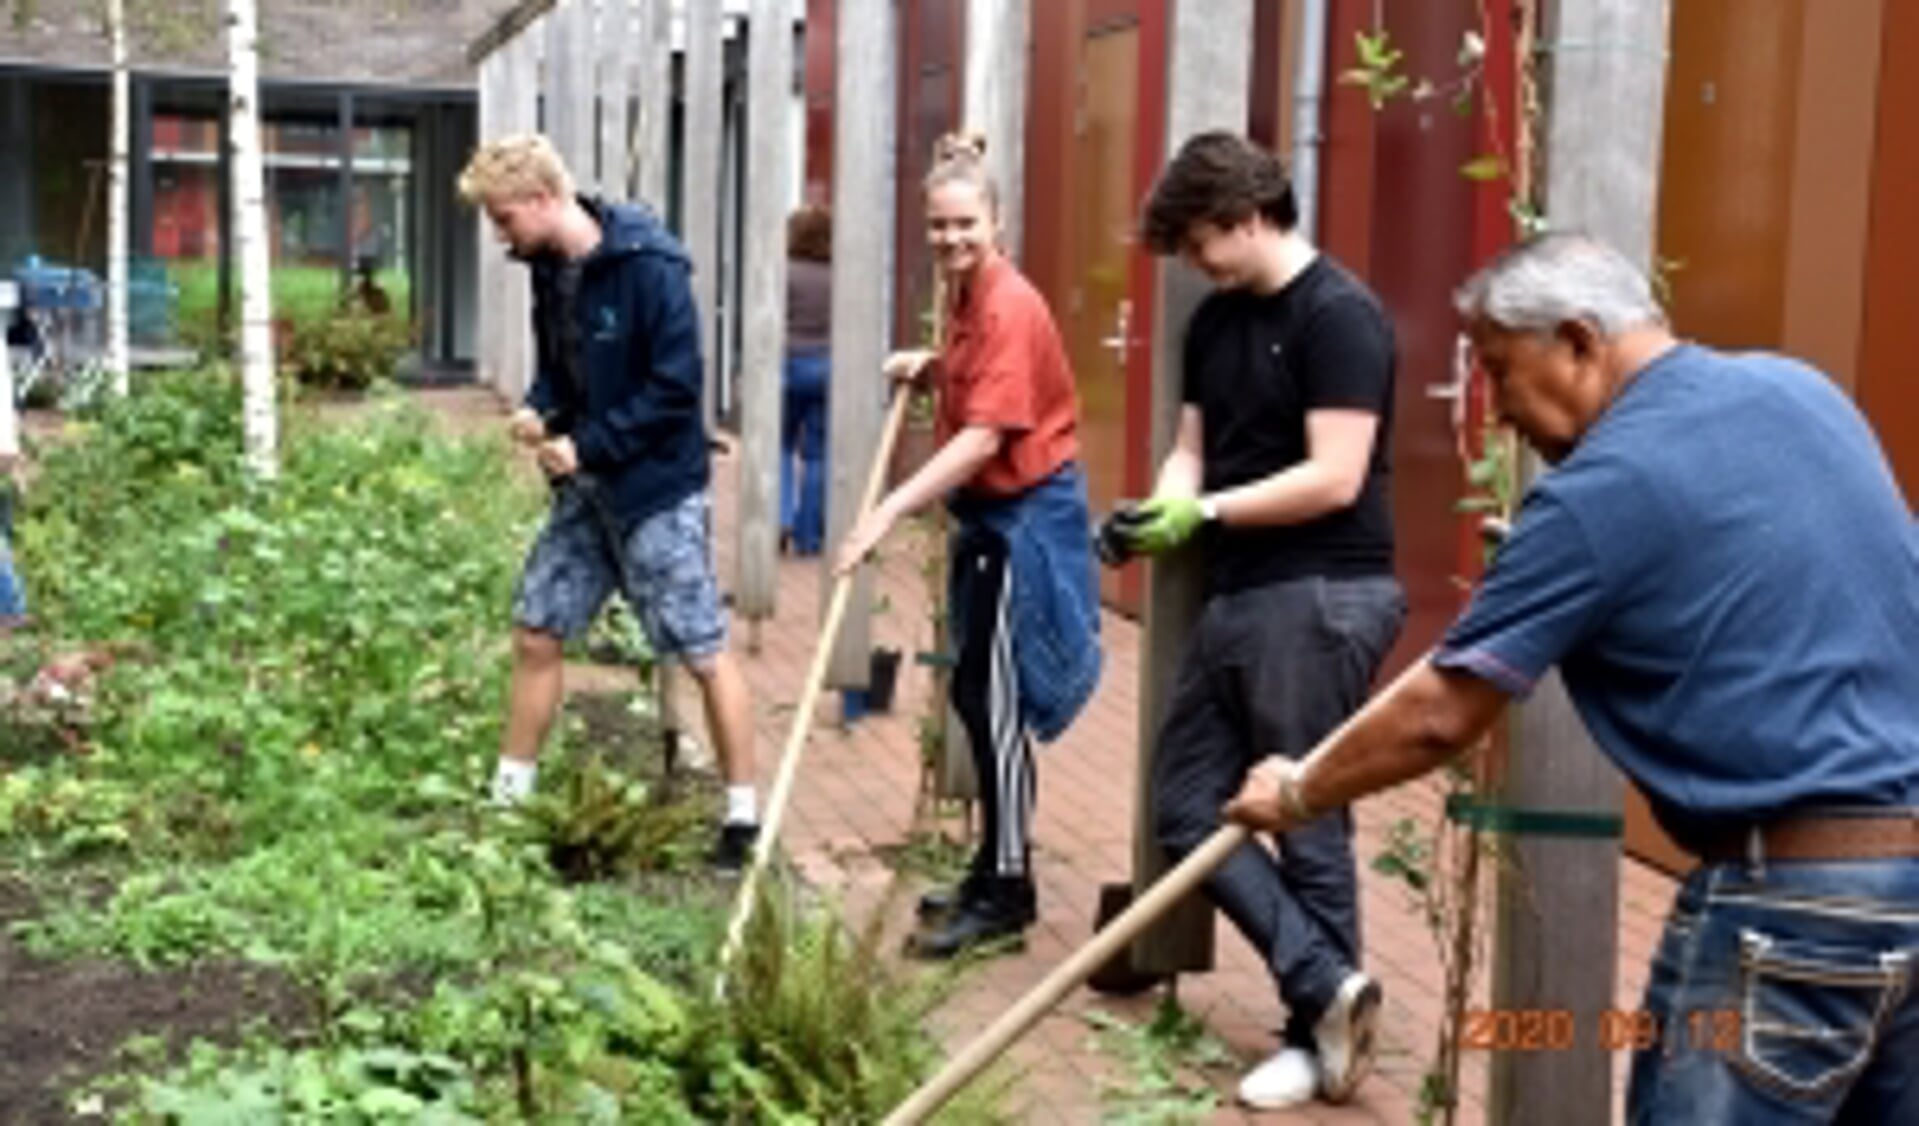 Naast tuinieren, hebben de studenten nog meer plannen om in de buurt te helpen, nu ze vooralsnog drie maanden langer mogen wonen in De Drie Hoven.